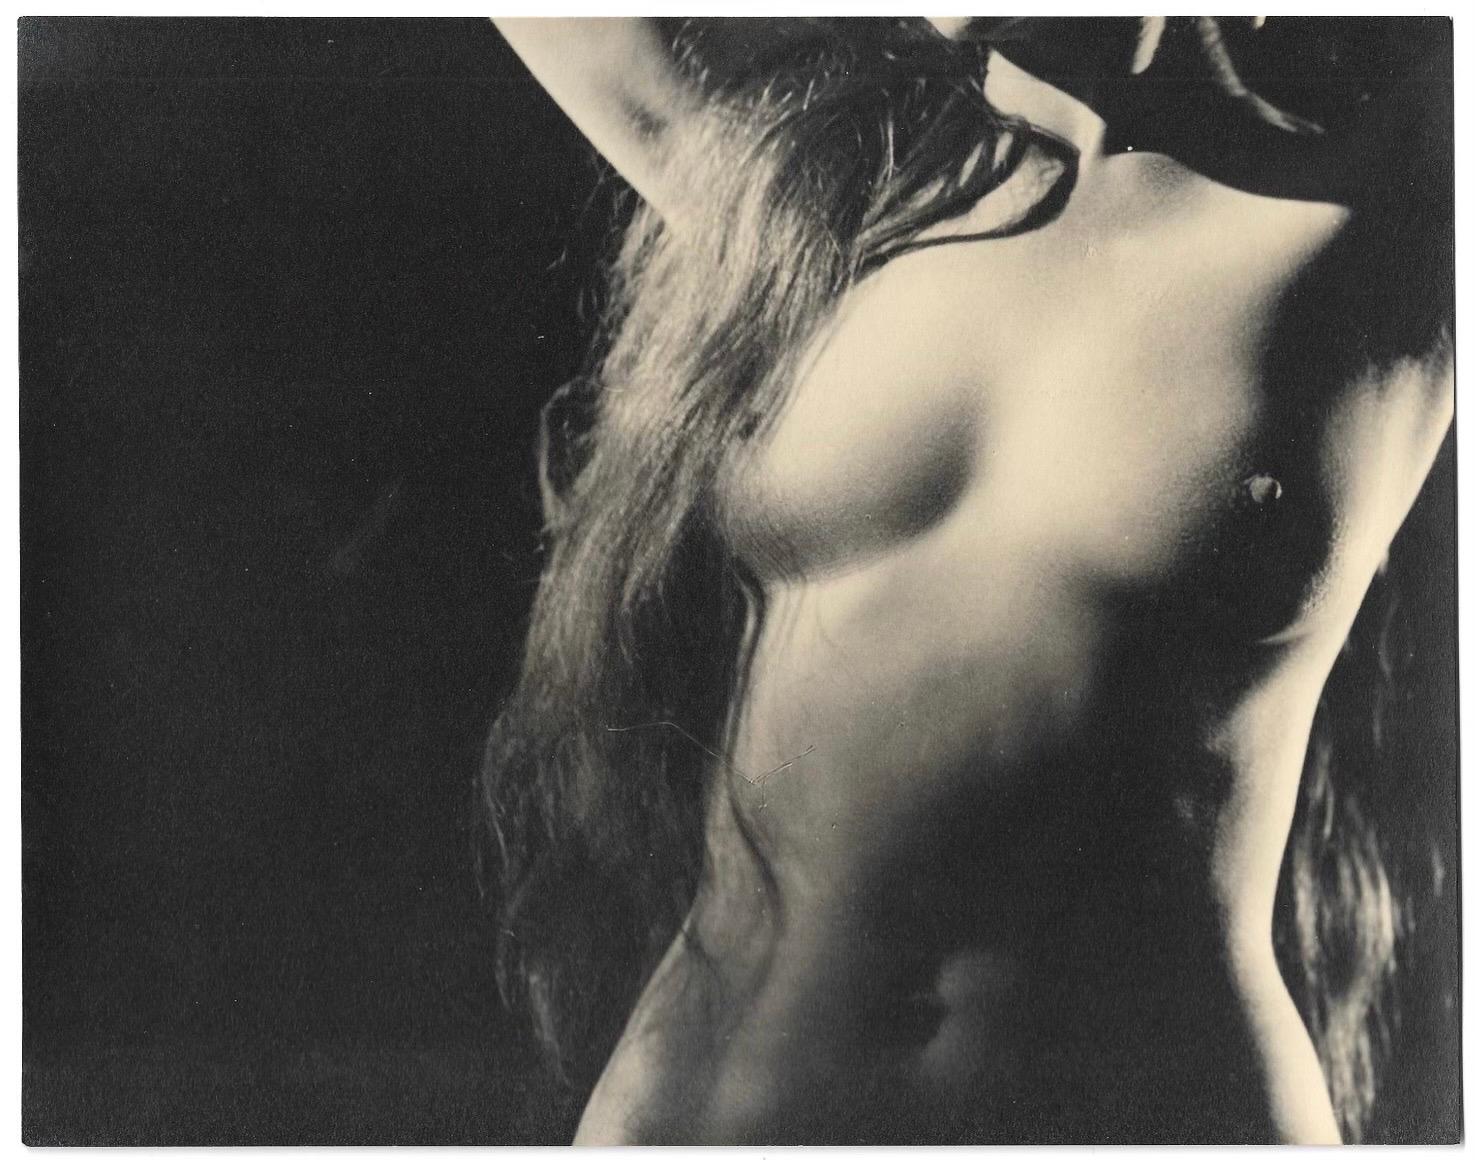 Schwarz-Weiß-Fotografie eines weiblichen Akts der zeitgenössischen amerikanischen Fotografin